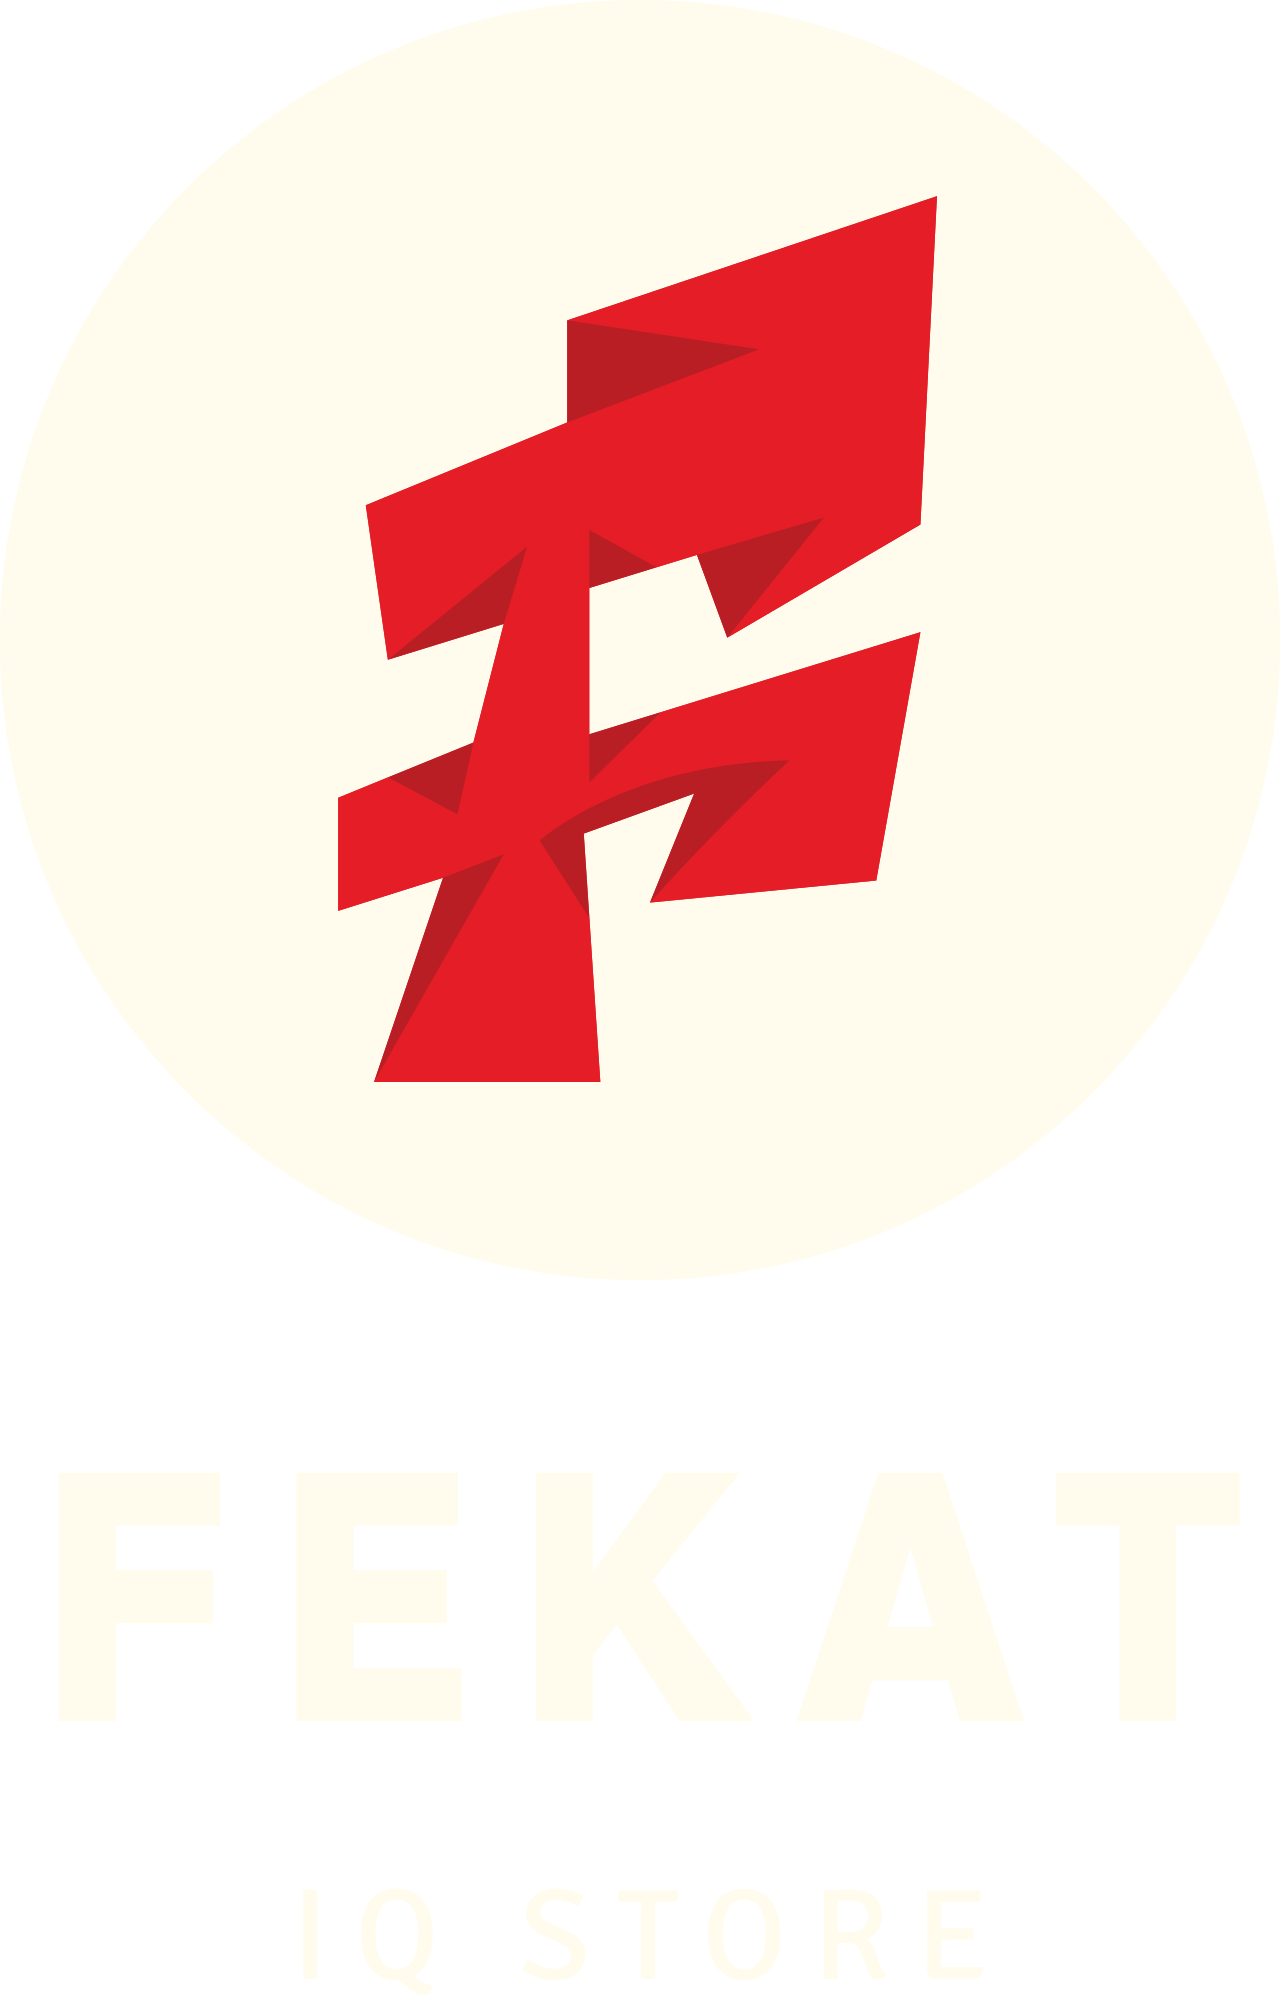 Fekat's logo